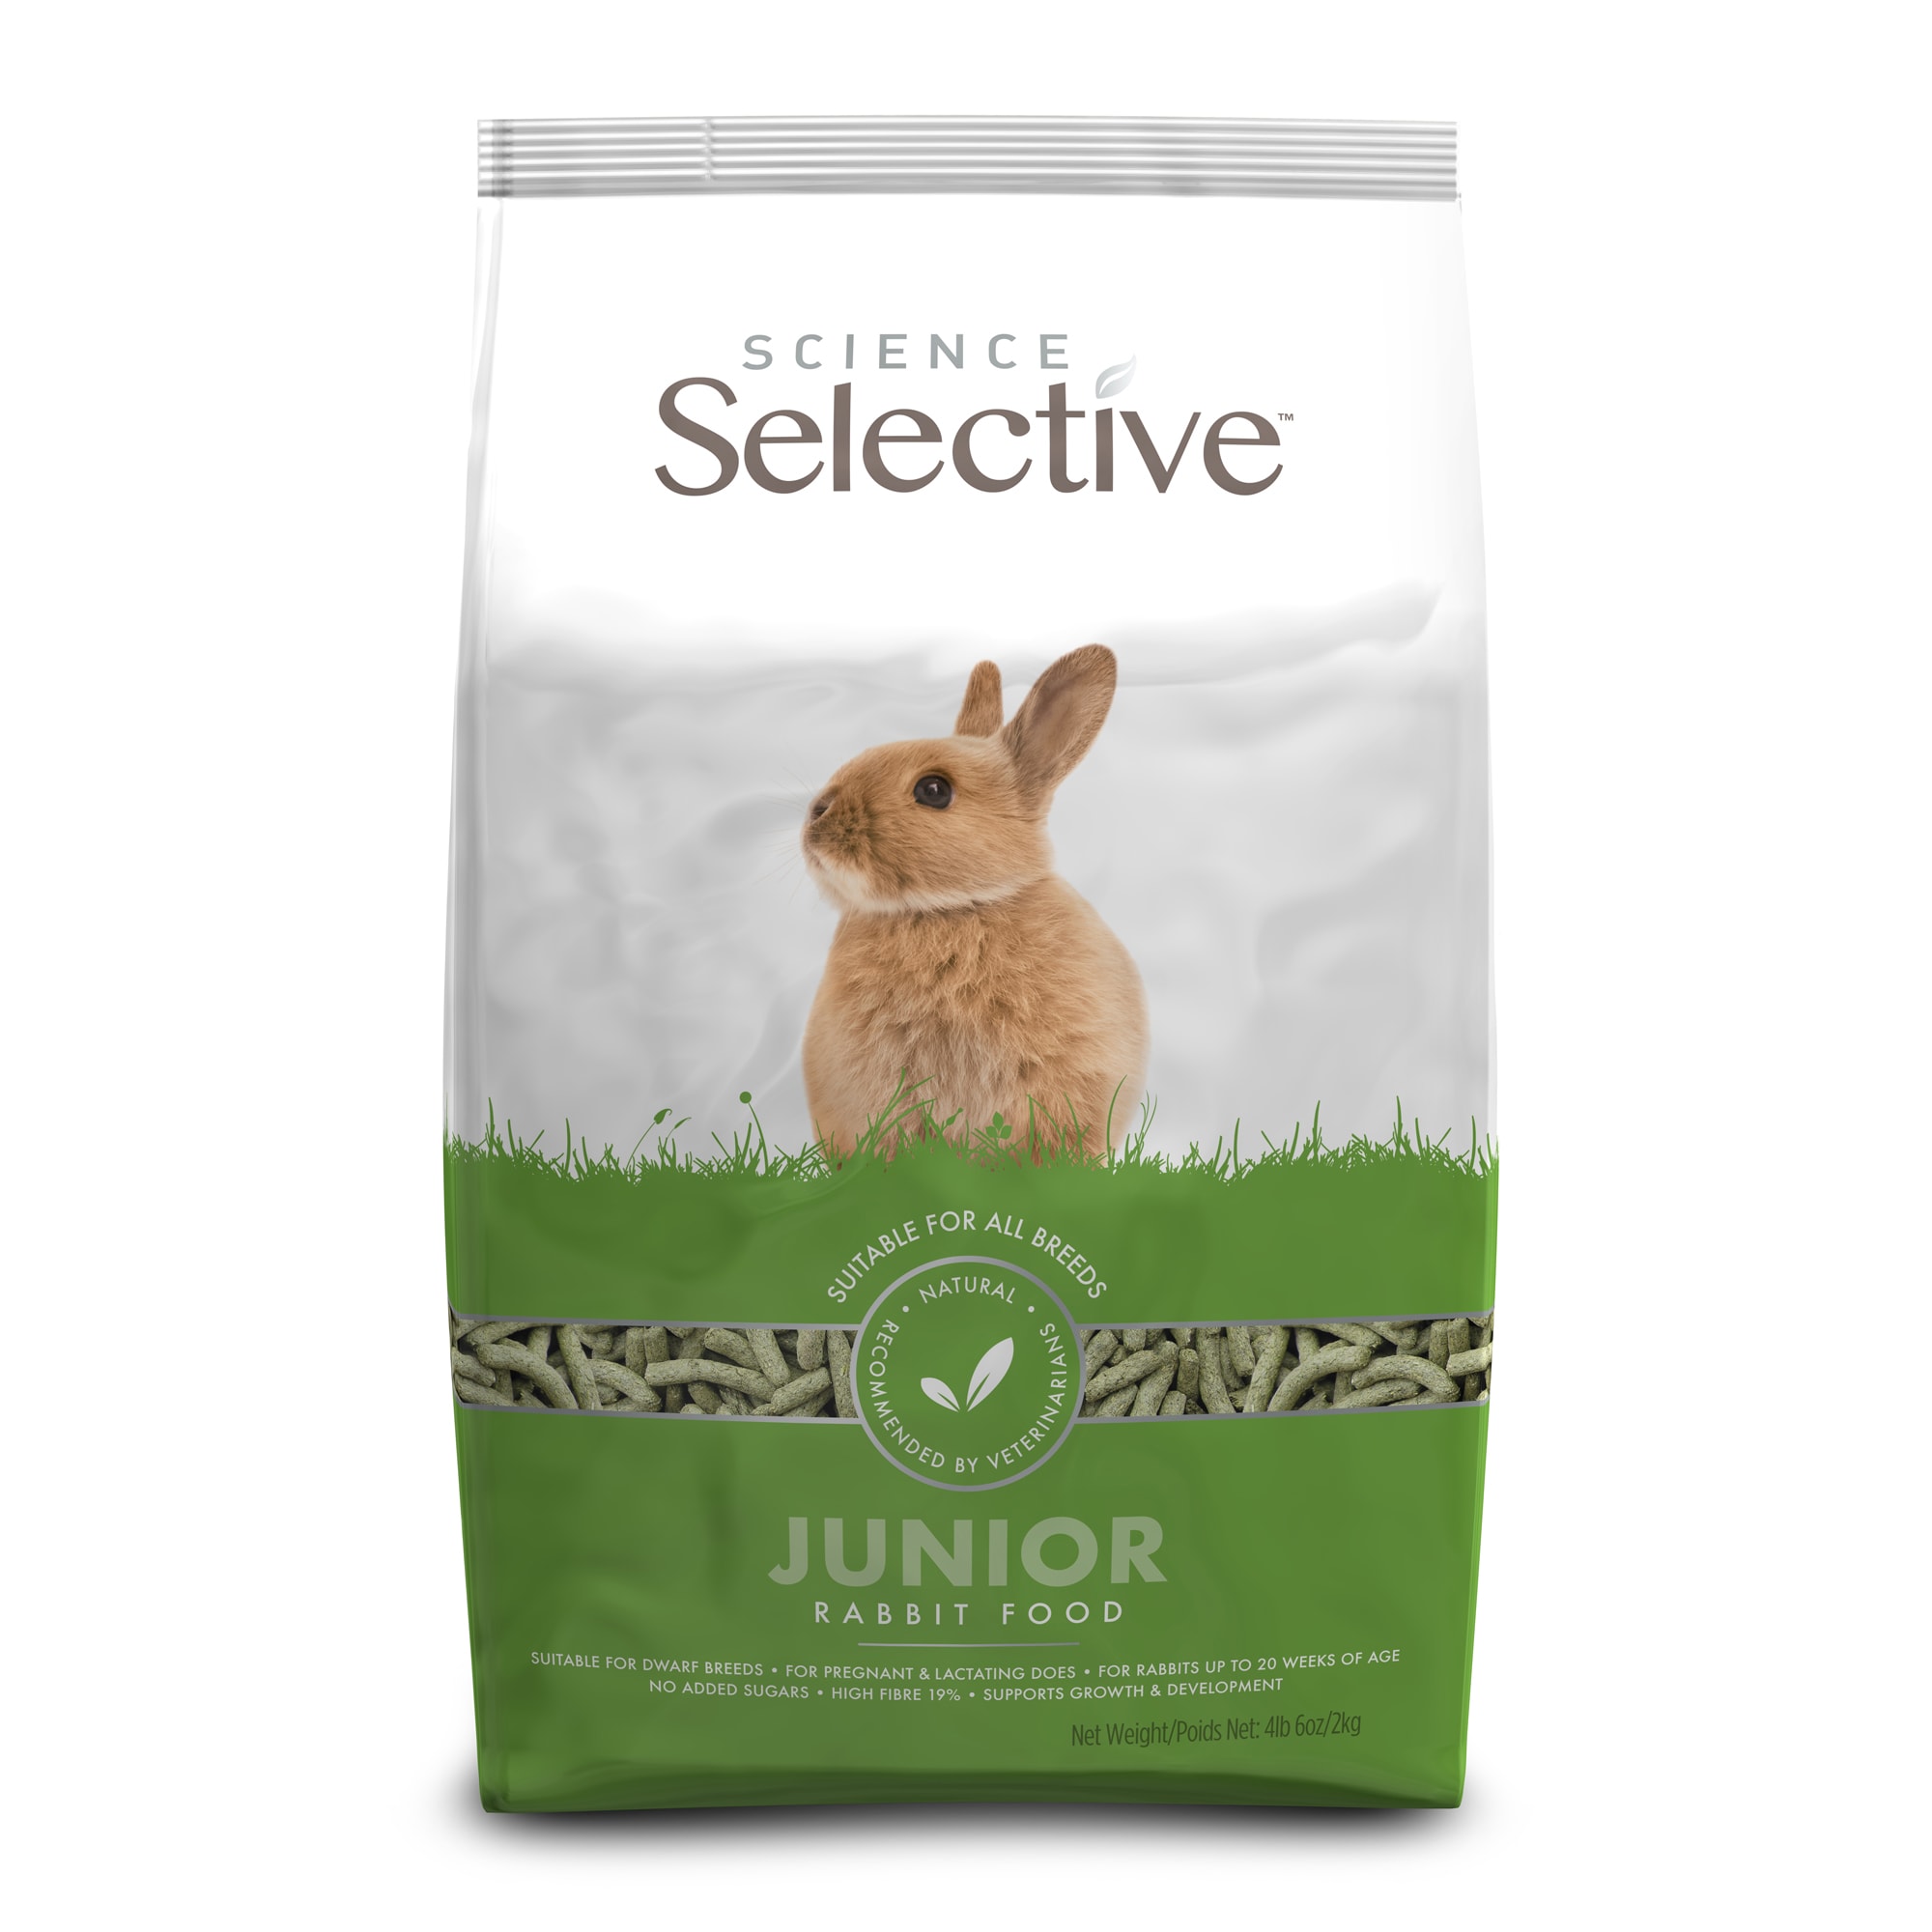 Maan oppervlakte Rijp etnisch Supreme Science Selective Junior Rabbit Food, 4.38 lbs. | Petco